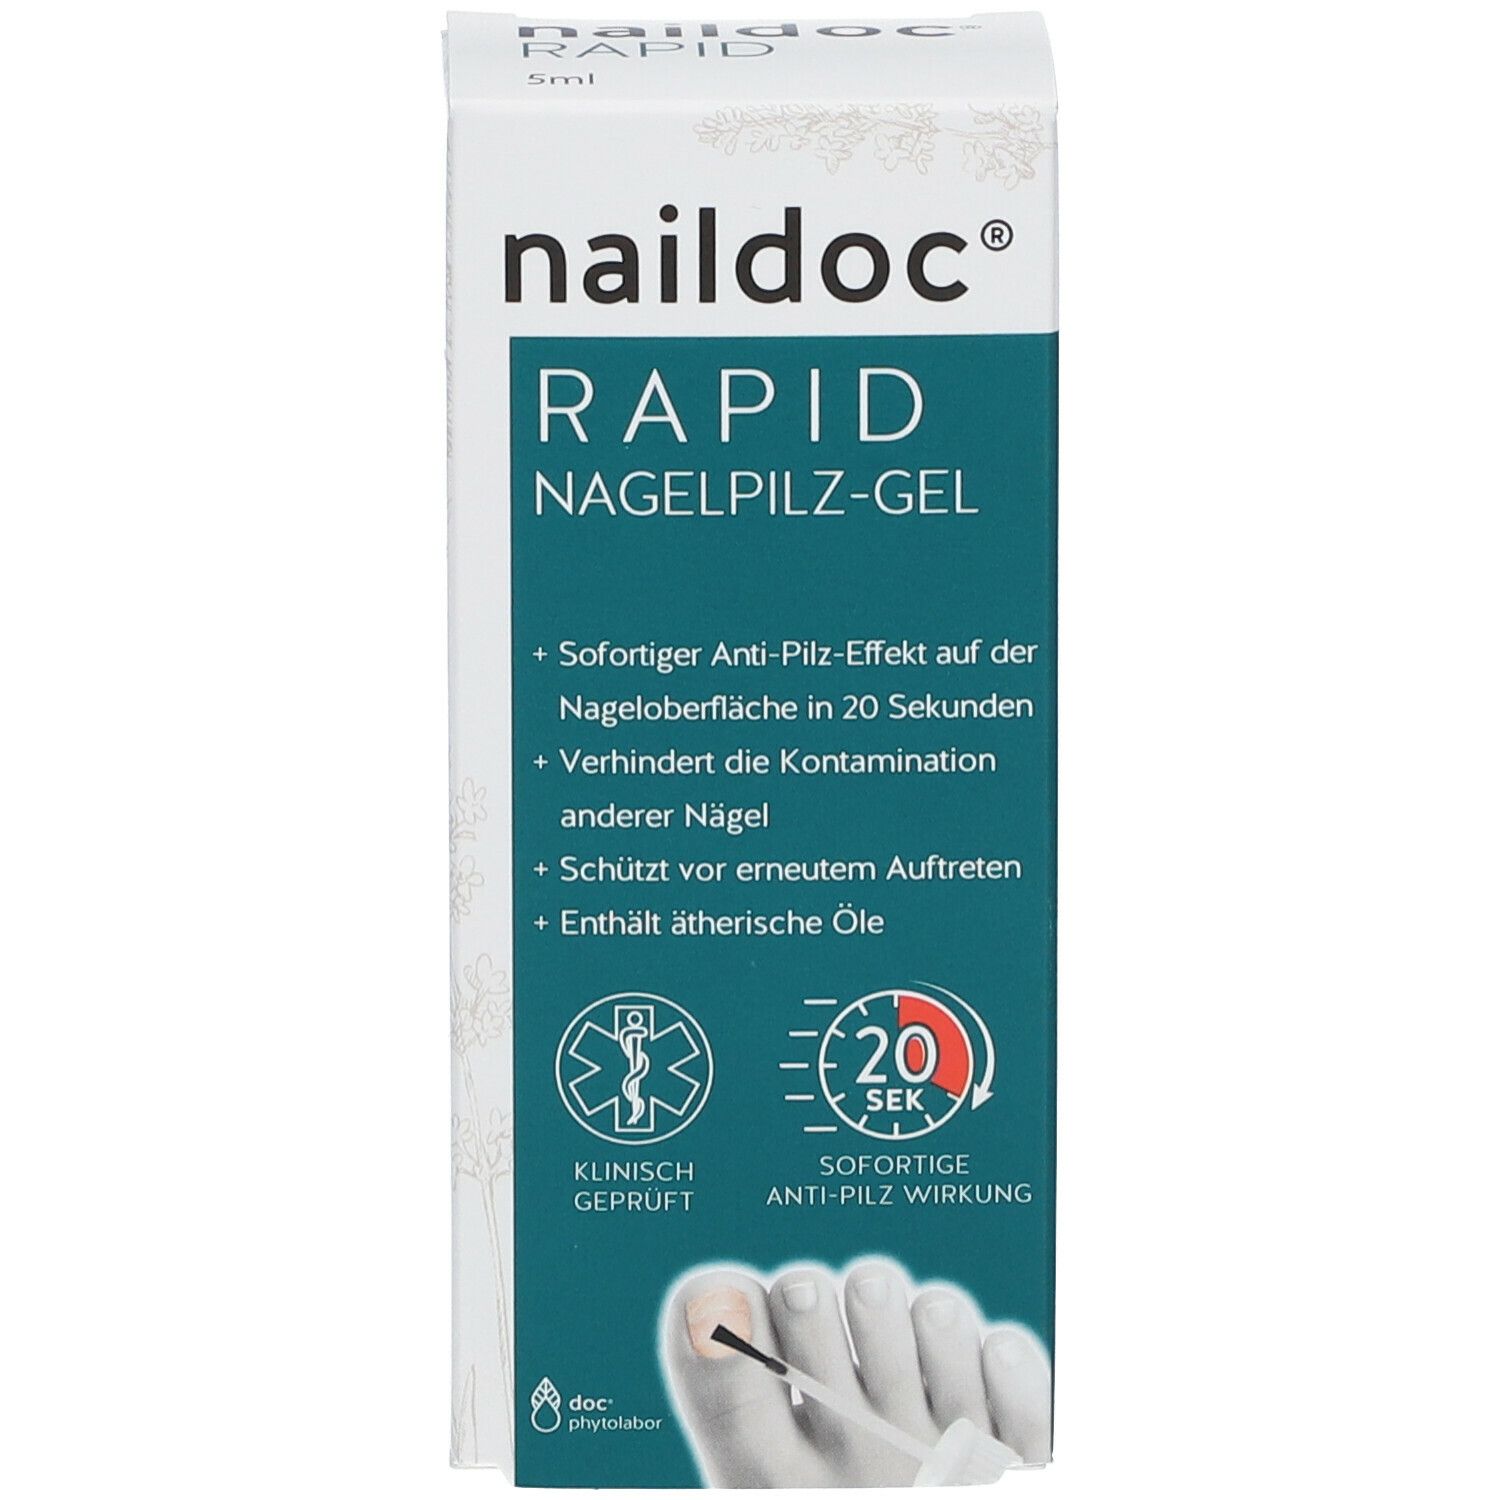 naildoc RAPID Nagelpilz Behandlungs-Gel